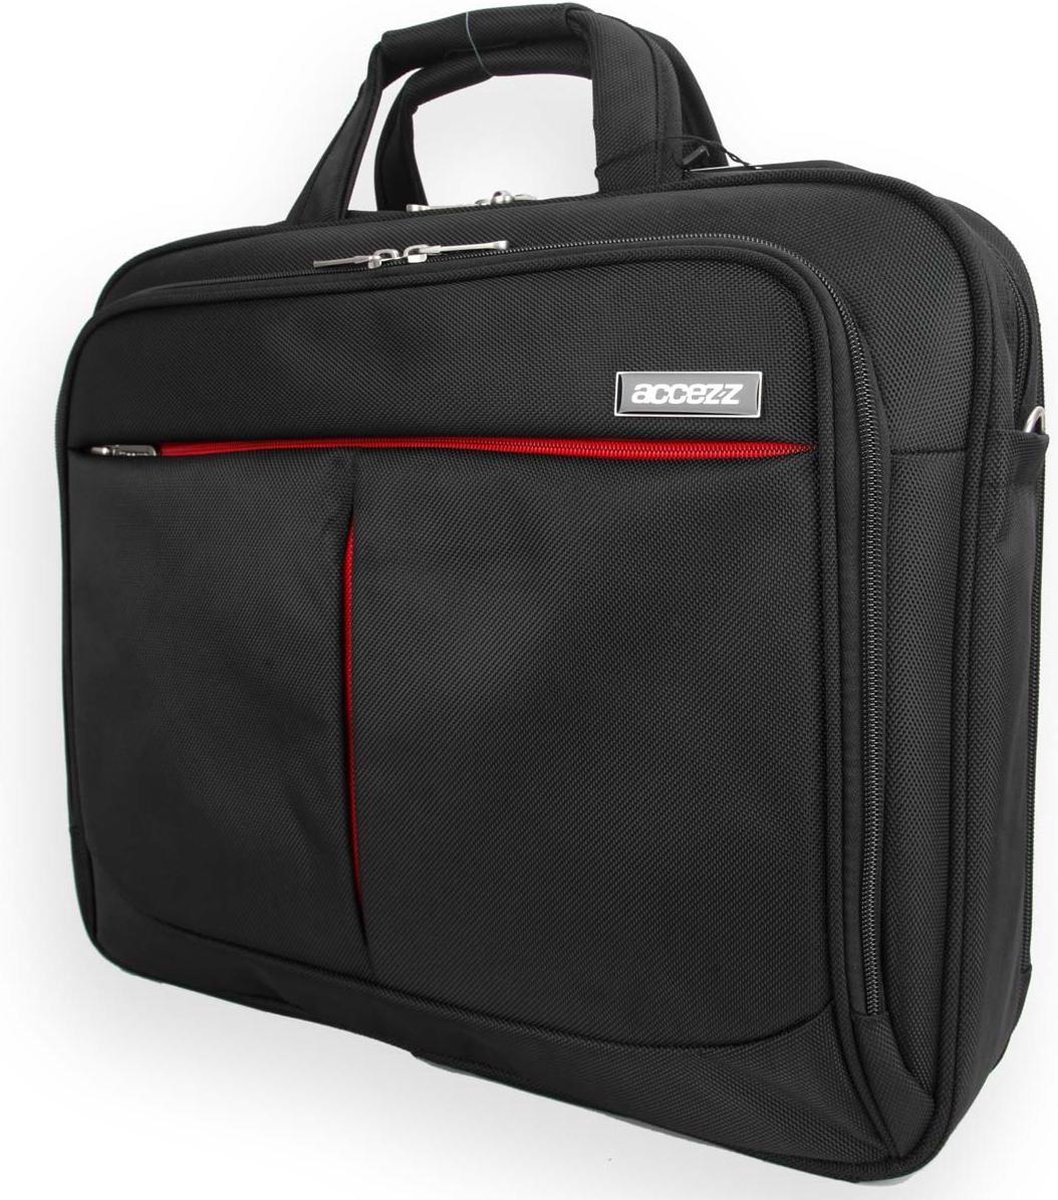 Accezz Laptoptas 17.3 inch - Laptop tas met schouderband - Extra bescherming en handige opbergvakken - Zwart